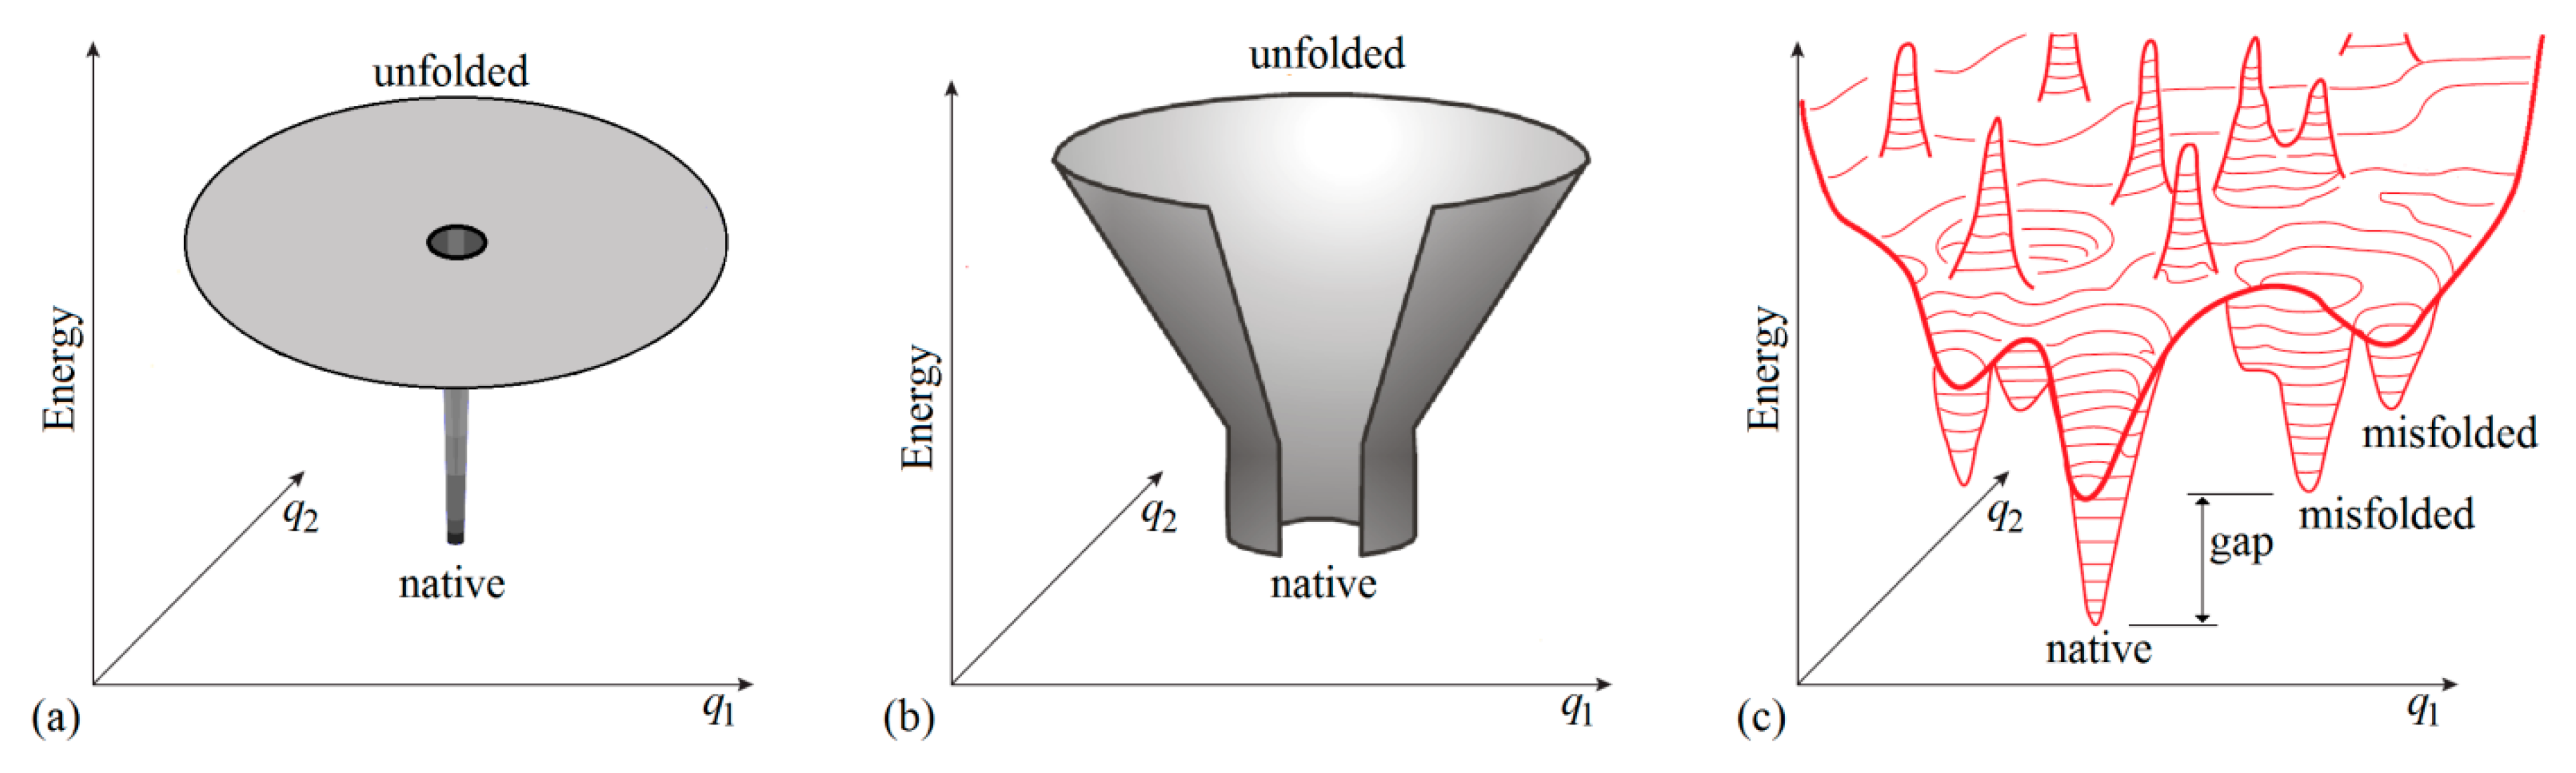 Folding funnel - Wikipedia